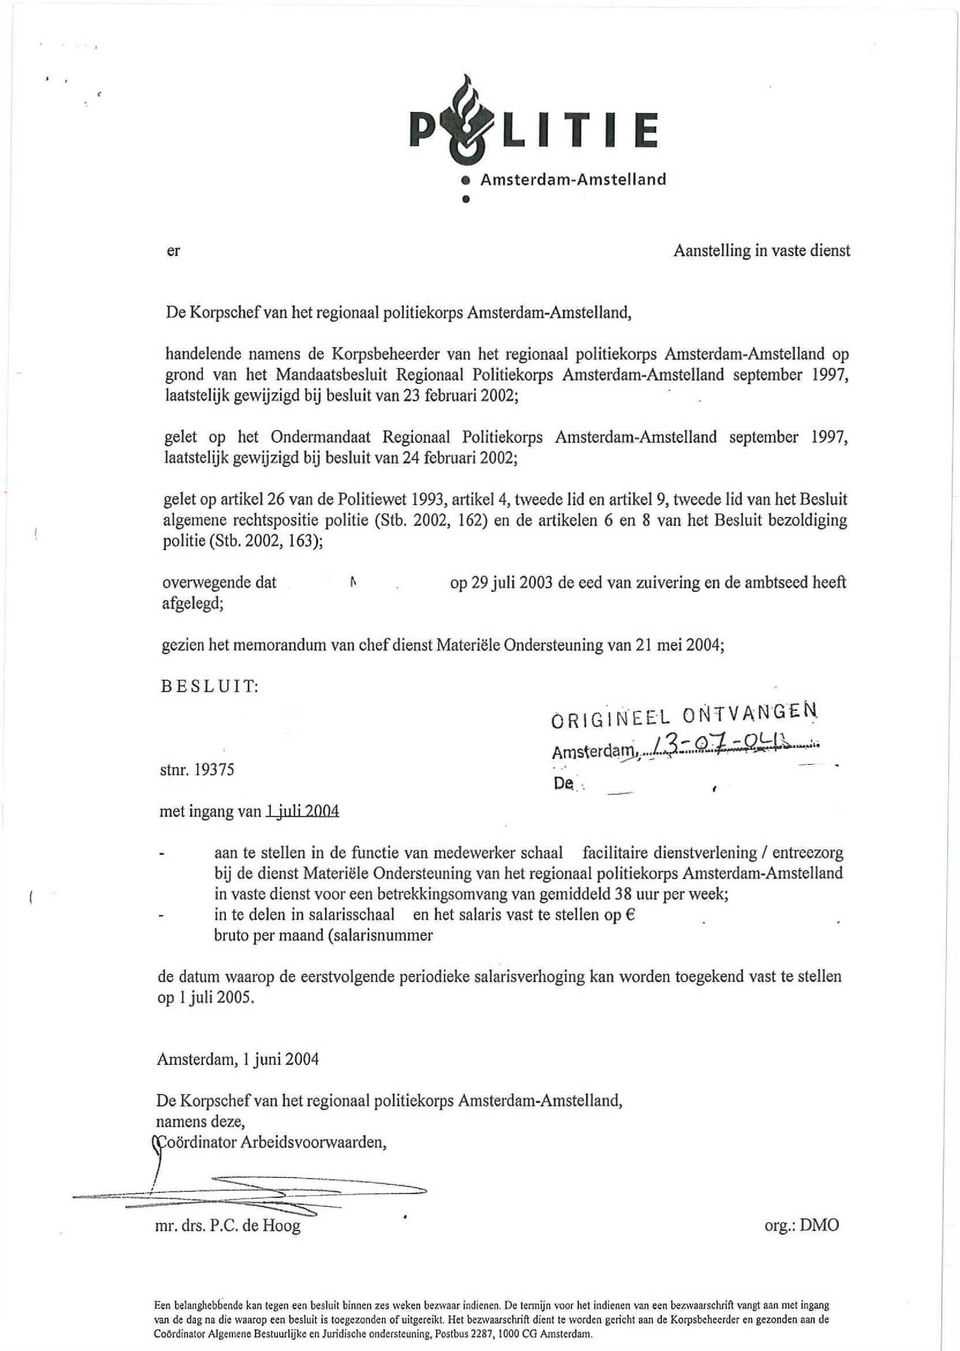 Regionaal Politiekorps Amsterdam-Amstelland september 1997, laatstelijk gewijzigd bij besluit van 24 februari 2002; gelet op artikel 26 van de Politiewet 1993, artikel 4, tweede lid en artikel 9,